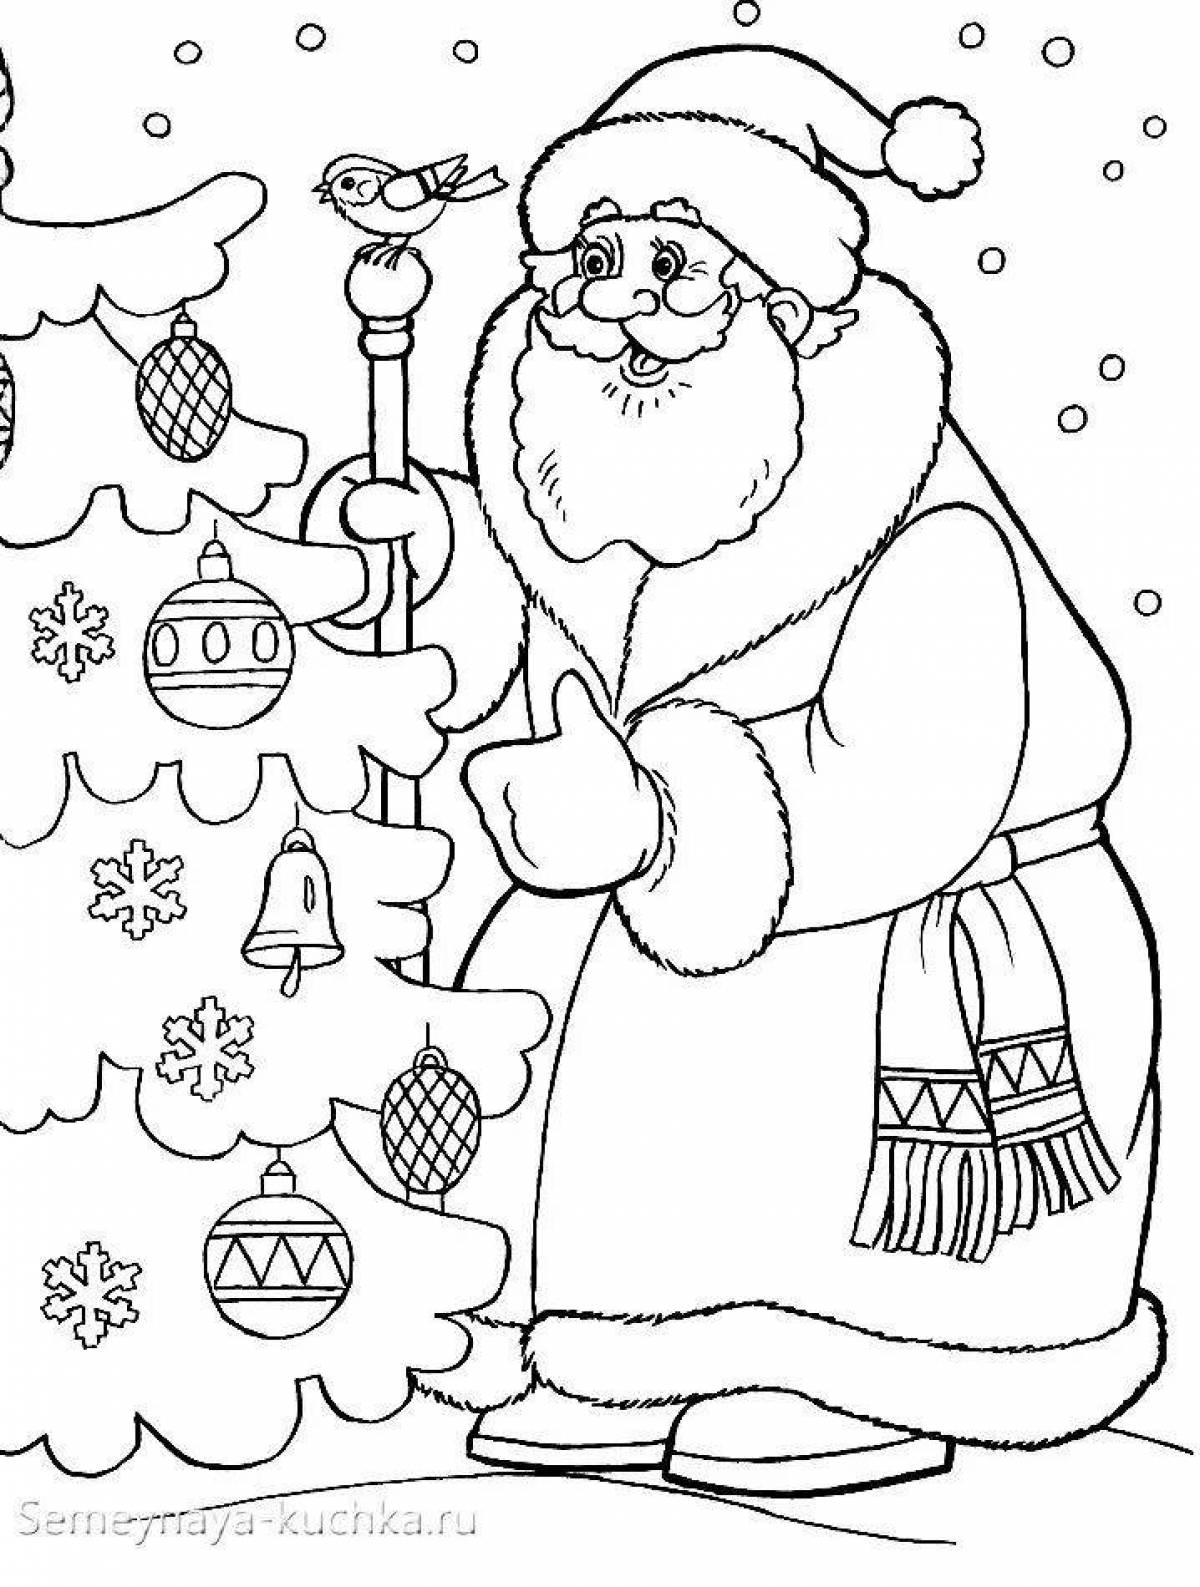 Santa Claus holiday card coloring page